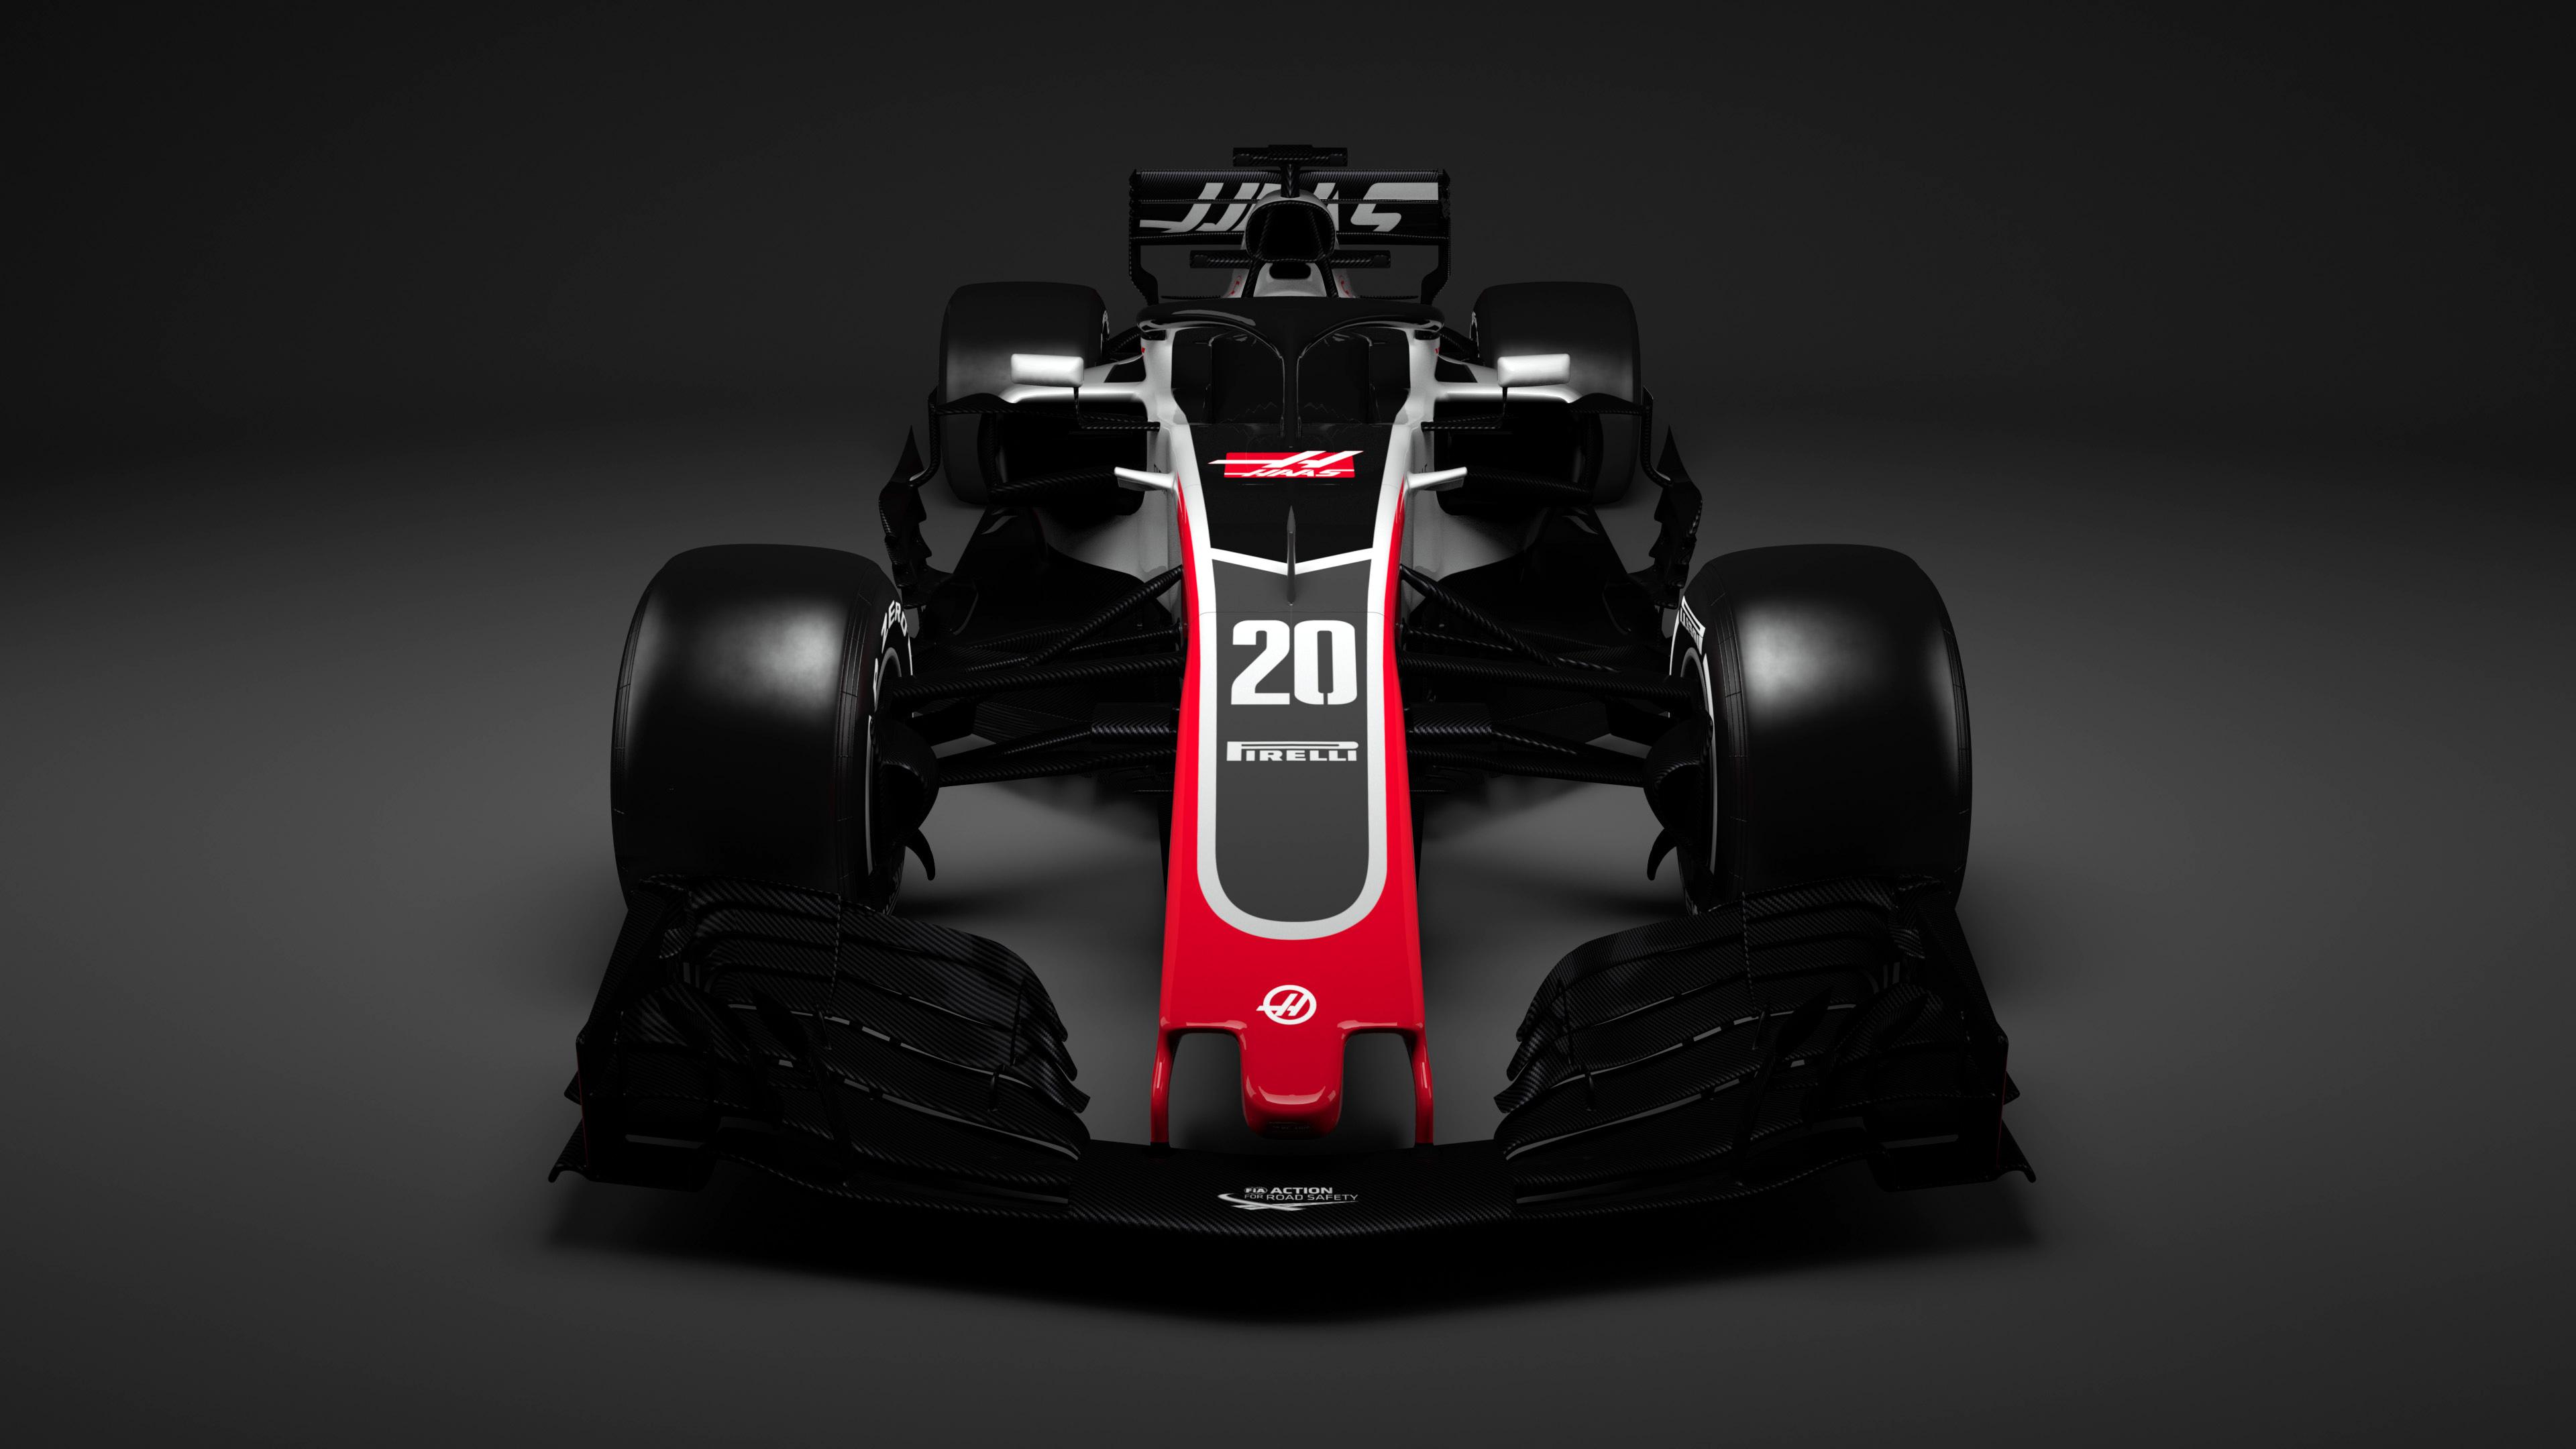 3840 x 2160 · jpeg - Haas F1 Formula 1 Car 4K Wallpaper | HD Car Wallpapers | ID #9598